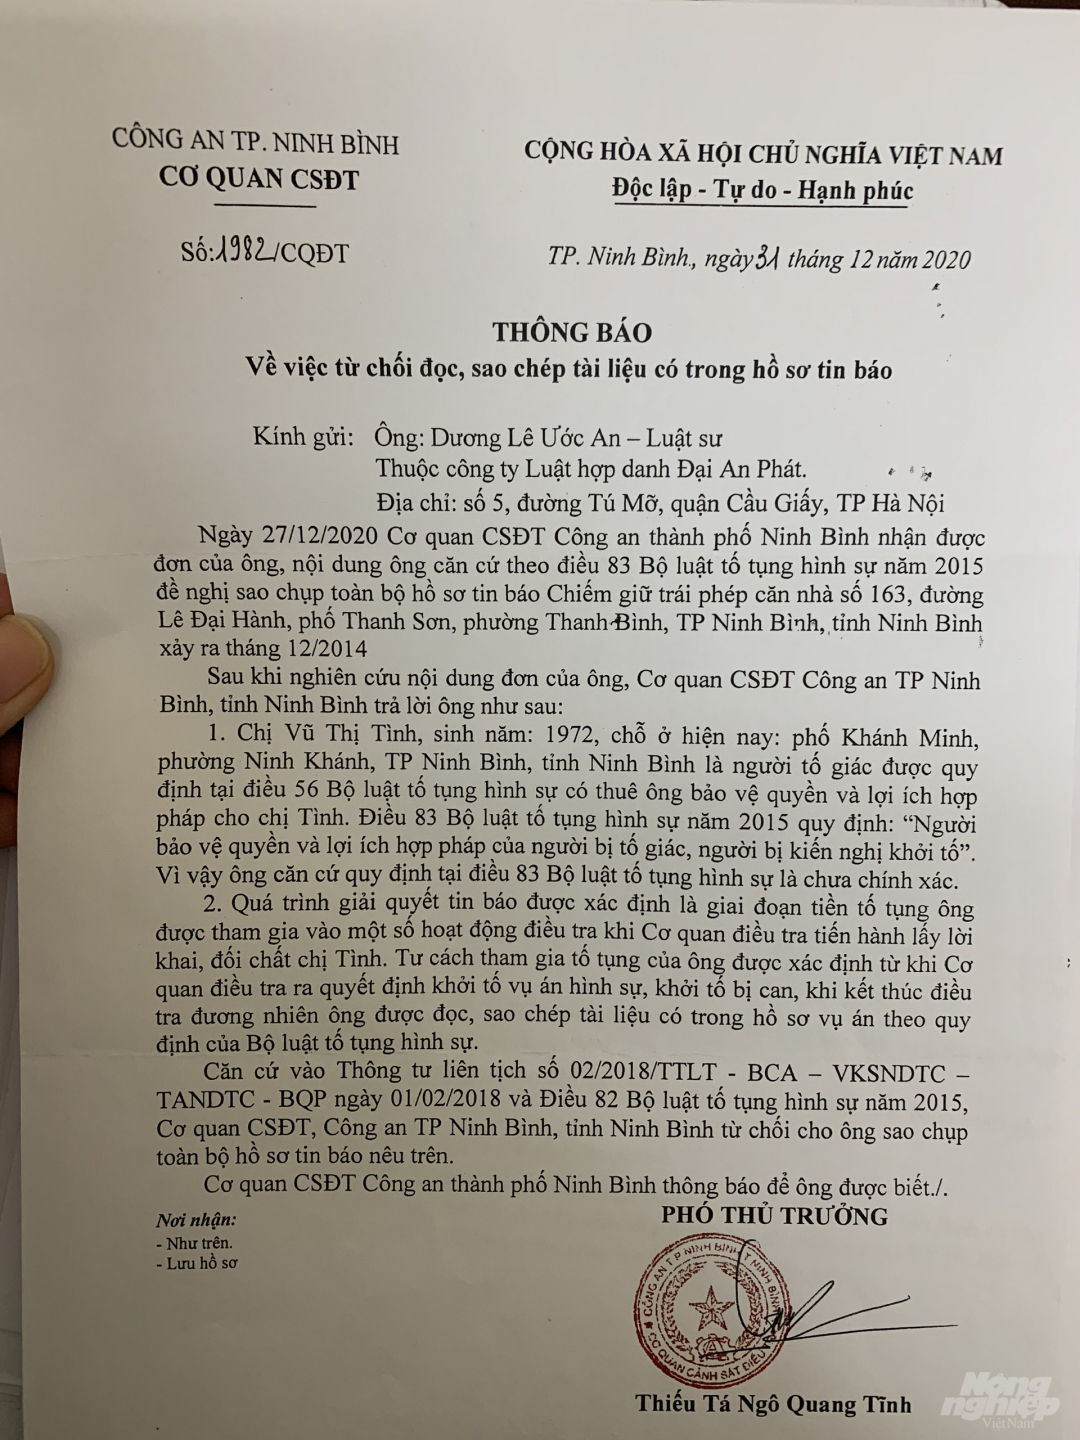 Văn bản của Cơ quan CSĐT Công an TP. Ninh Bình thông báo về việc từ chối luật sư Dương Lê Ước An đọc, sao chép tài liệu có trong hồ sơ tin báo. 